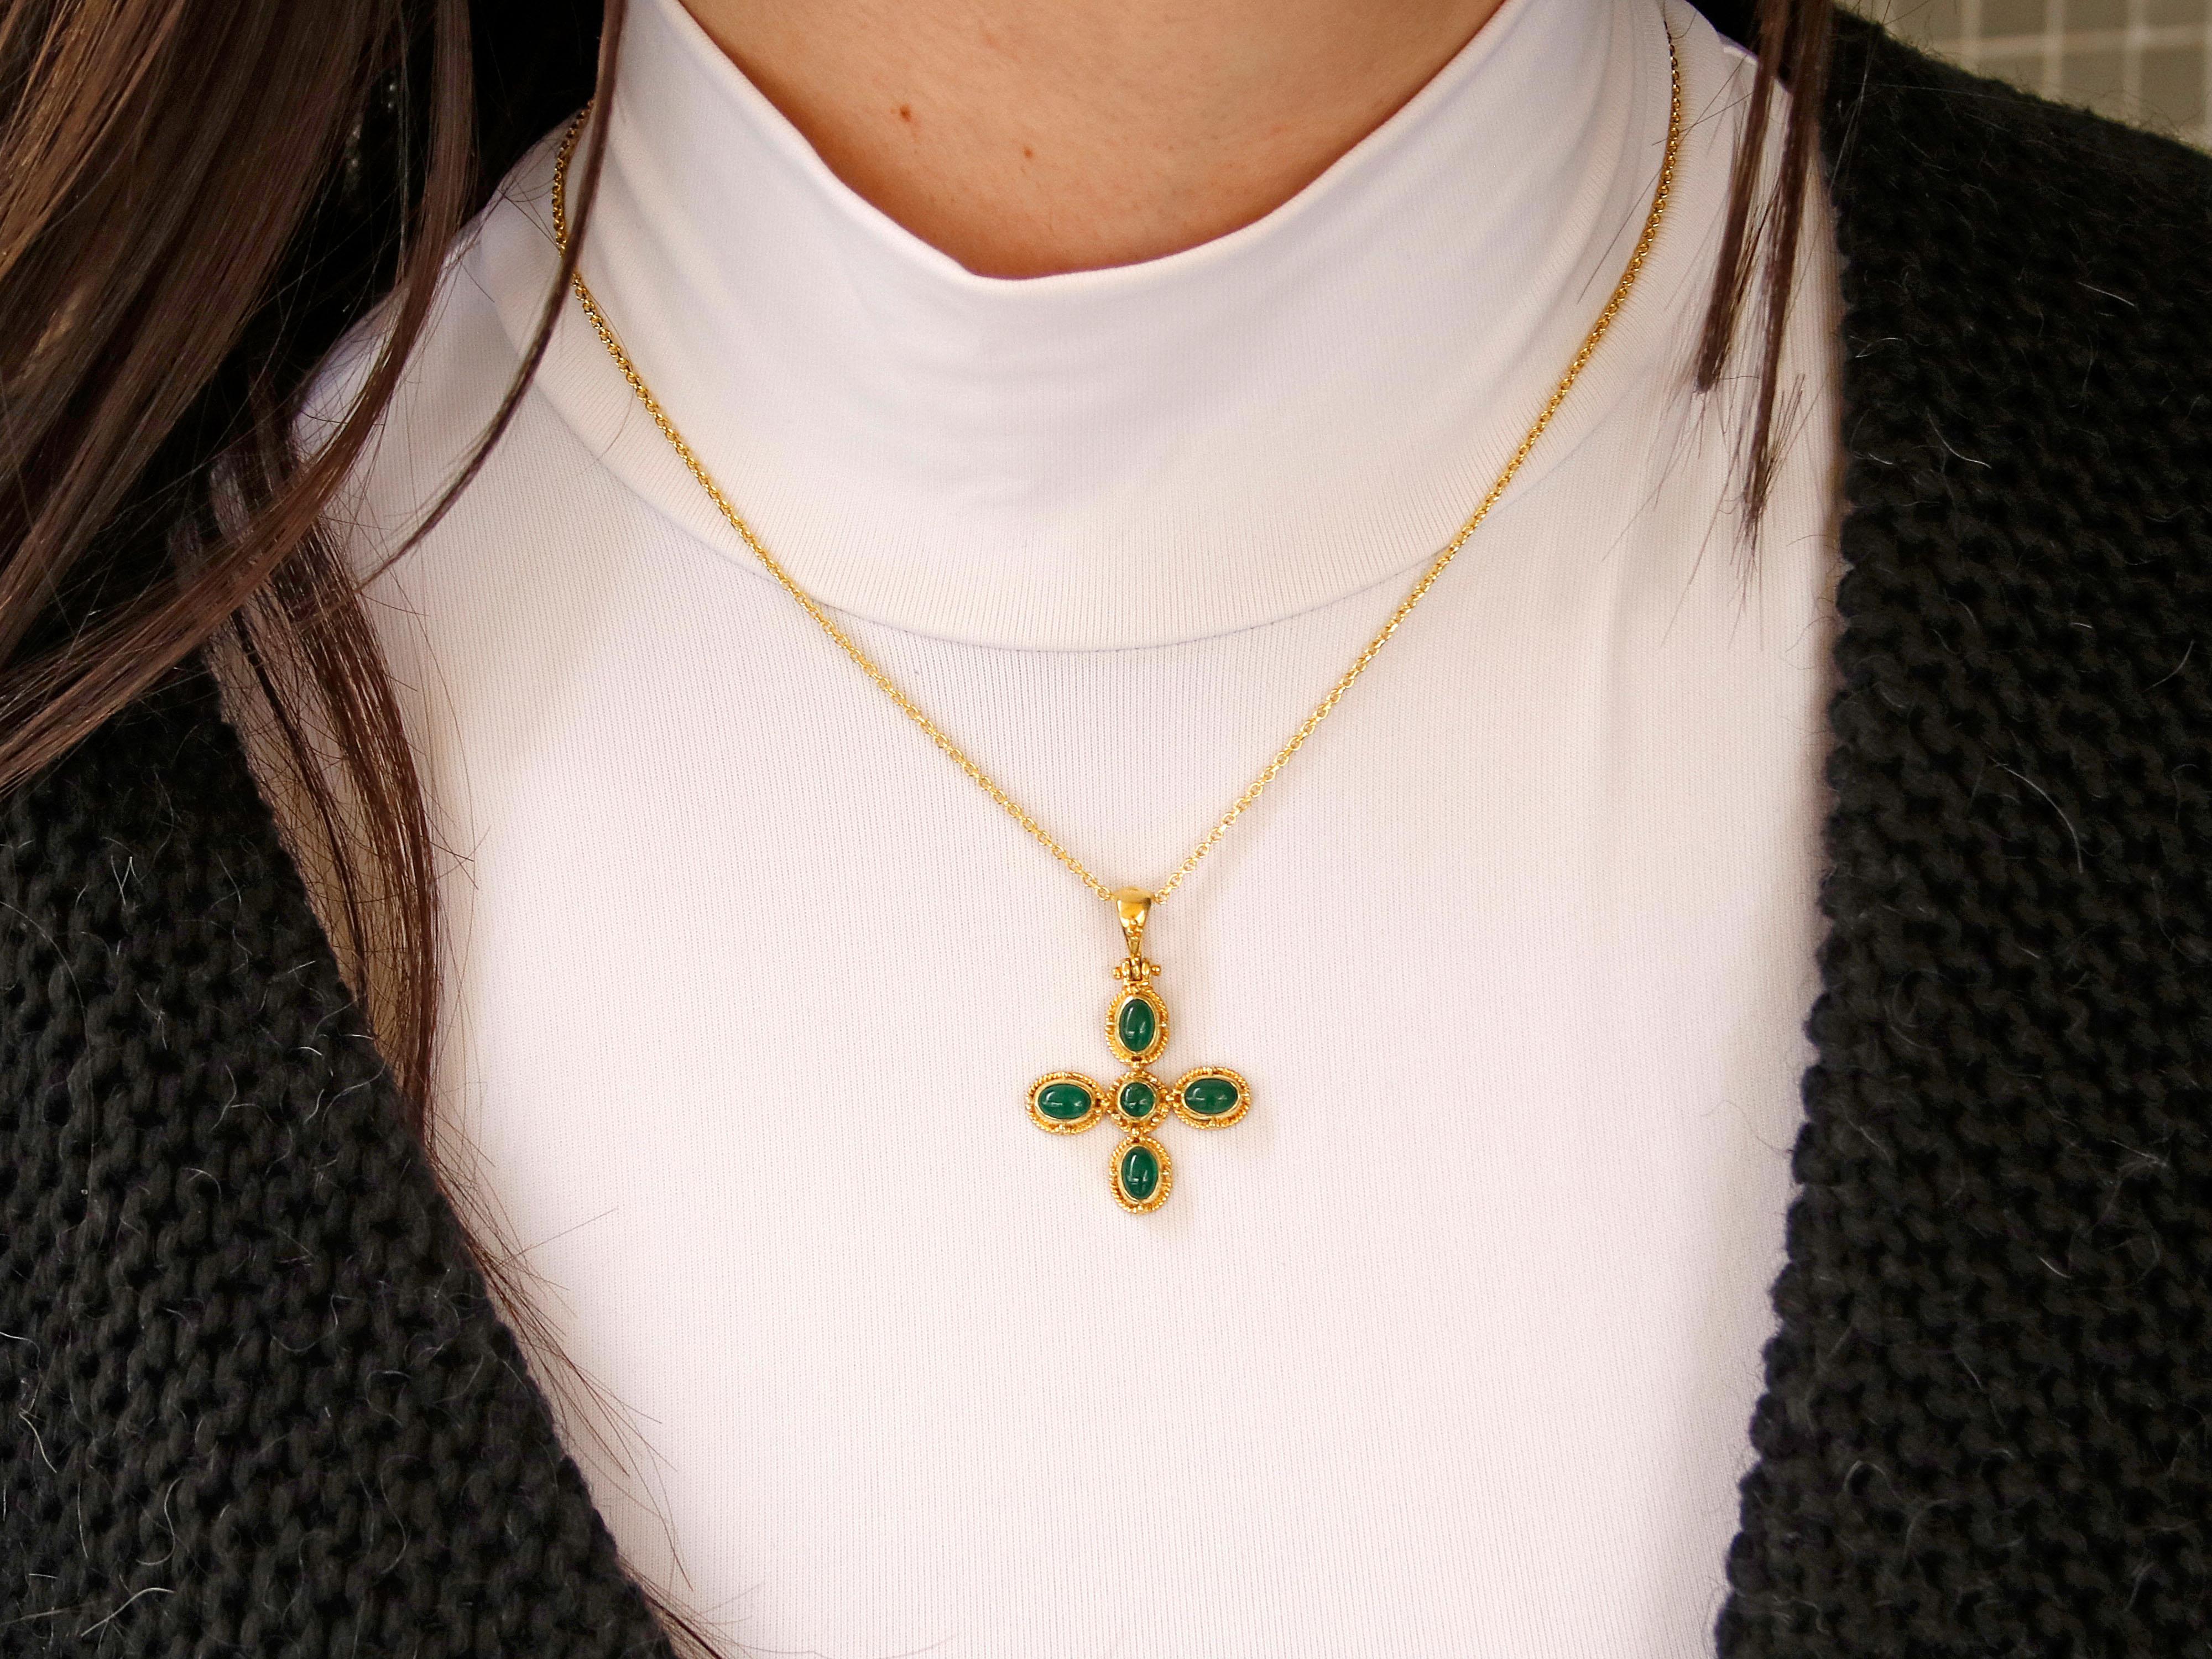 Byzantinisch inspiriertes Kreuz aus 18 Karat Gold mit aufwändigem Design und handwerklichem Können. Dieses Kreuz zeichnet sich durch eine Kombination aus Cabochon-Smaragden, Granulation und filigranen Verzierungen aus, die seine luxuriöse